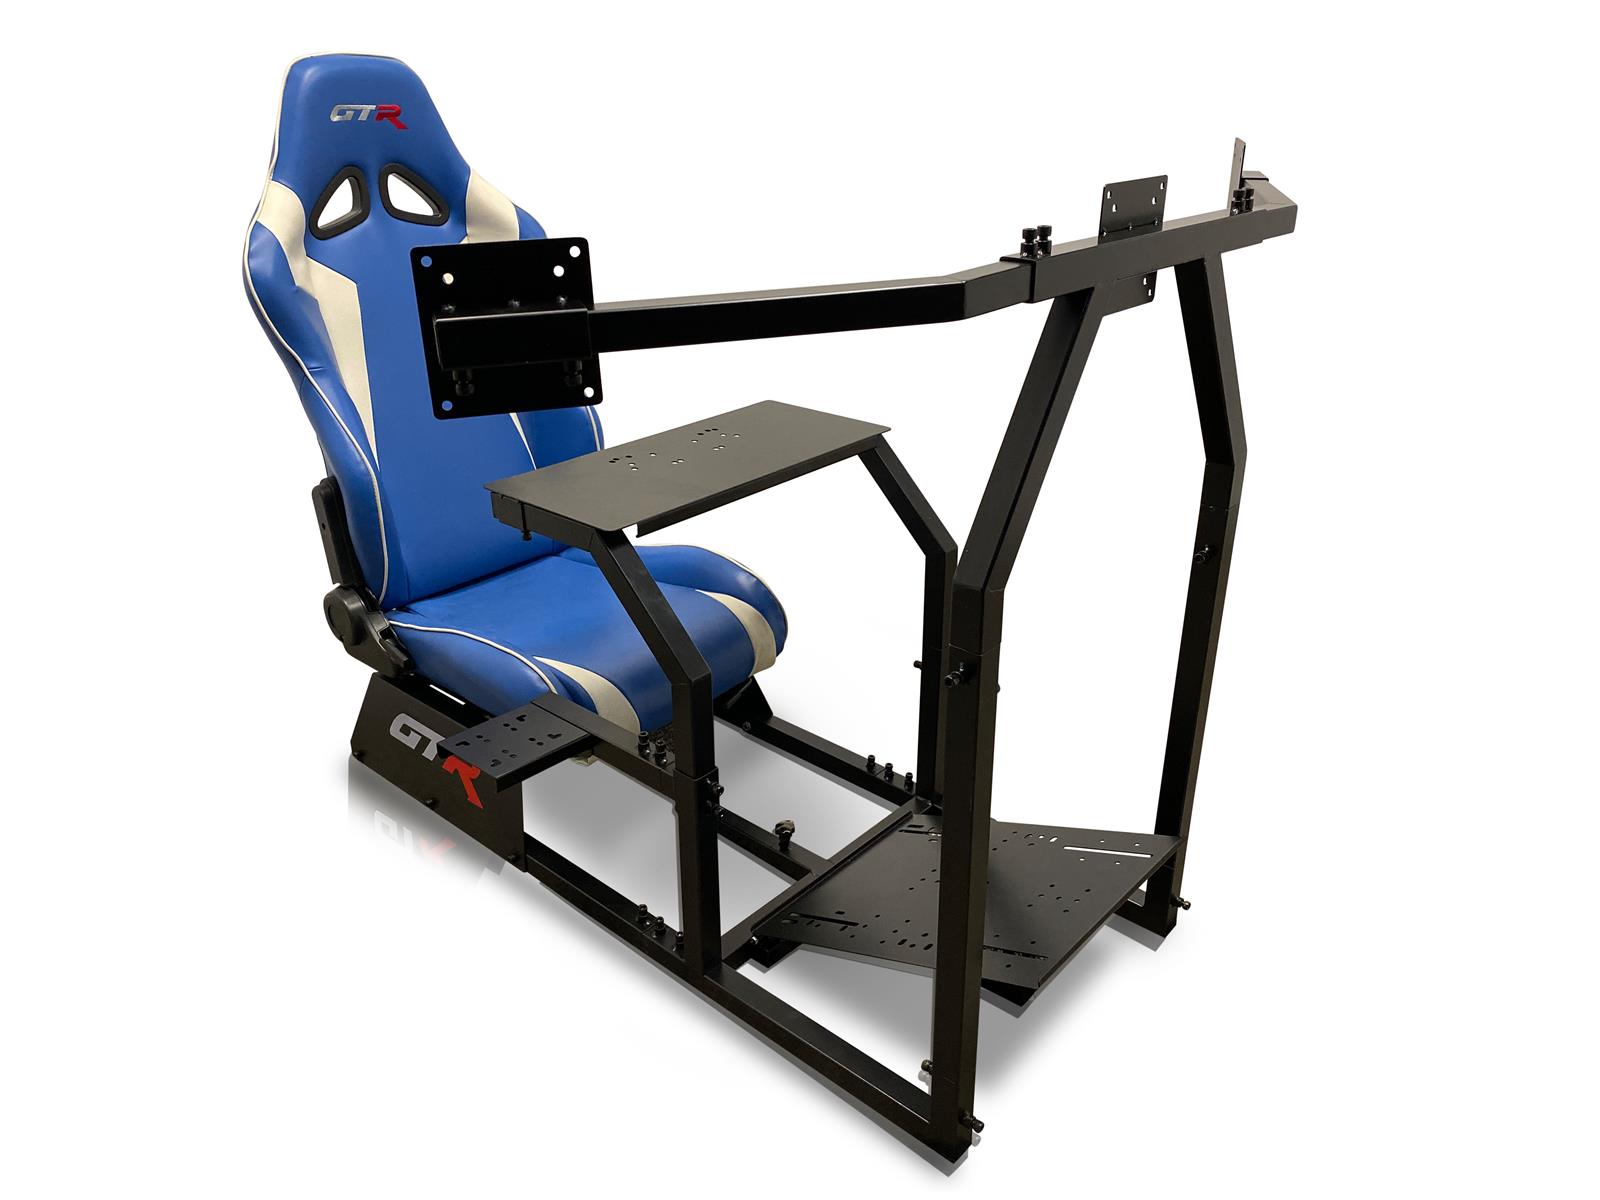 GTRacer l Budget Racing Sim Setup l Affordable Racing Simulator